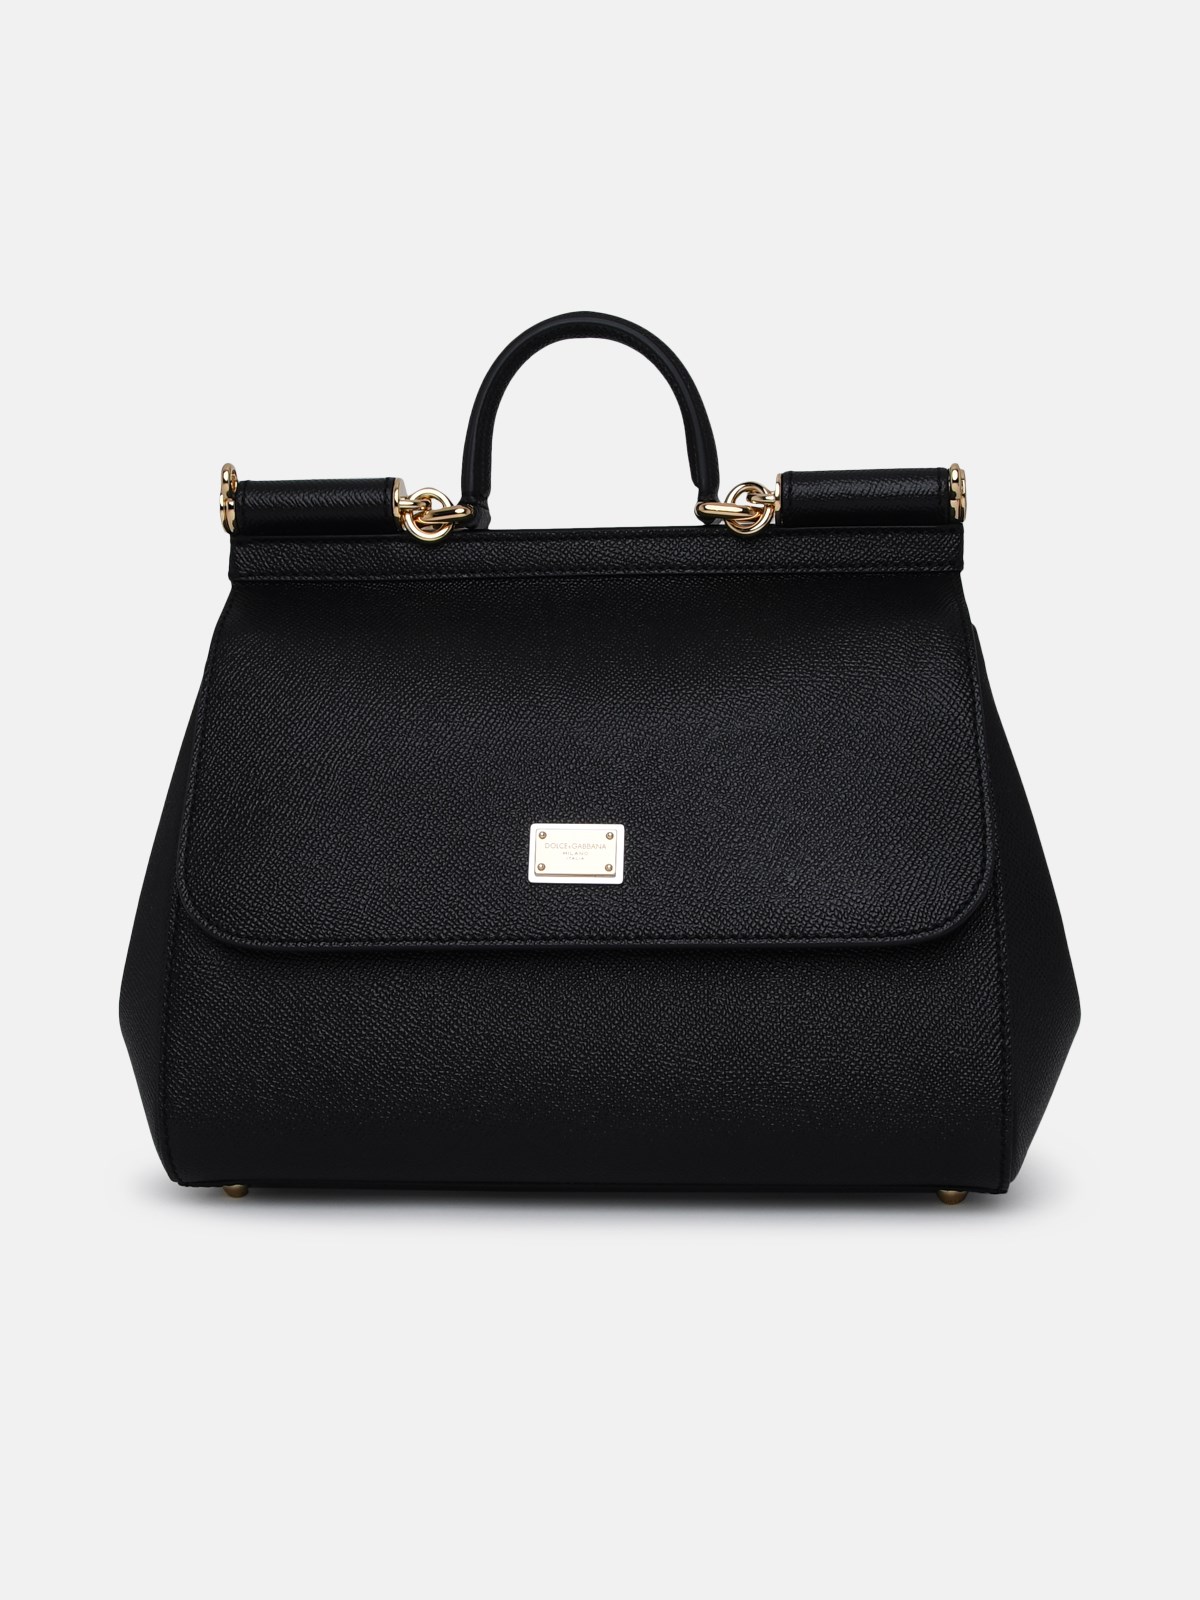 Dolce & Gabbana Large Black Leather Sicily Bag